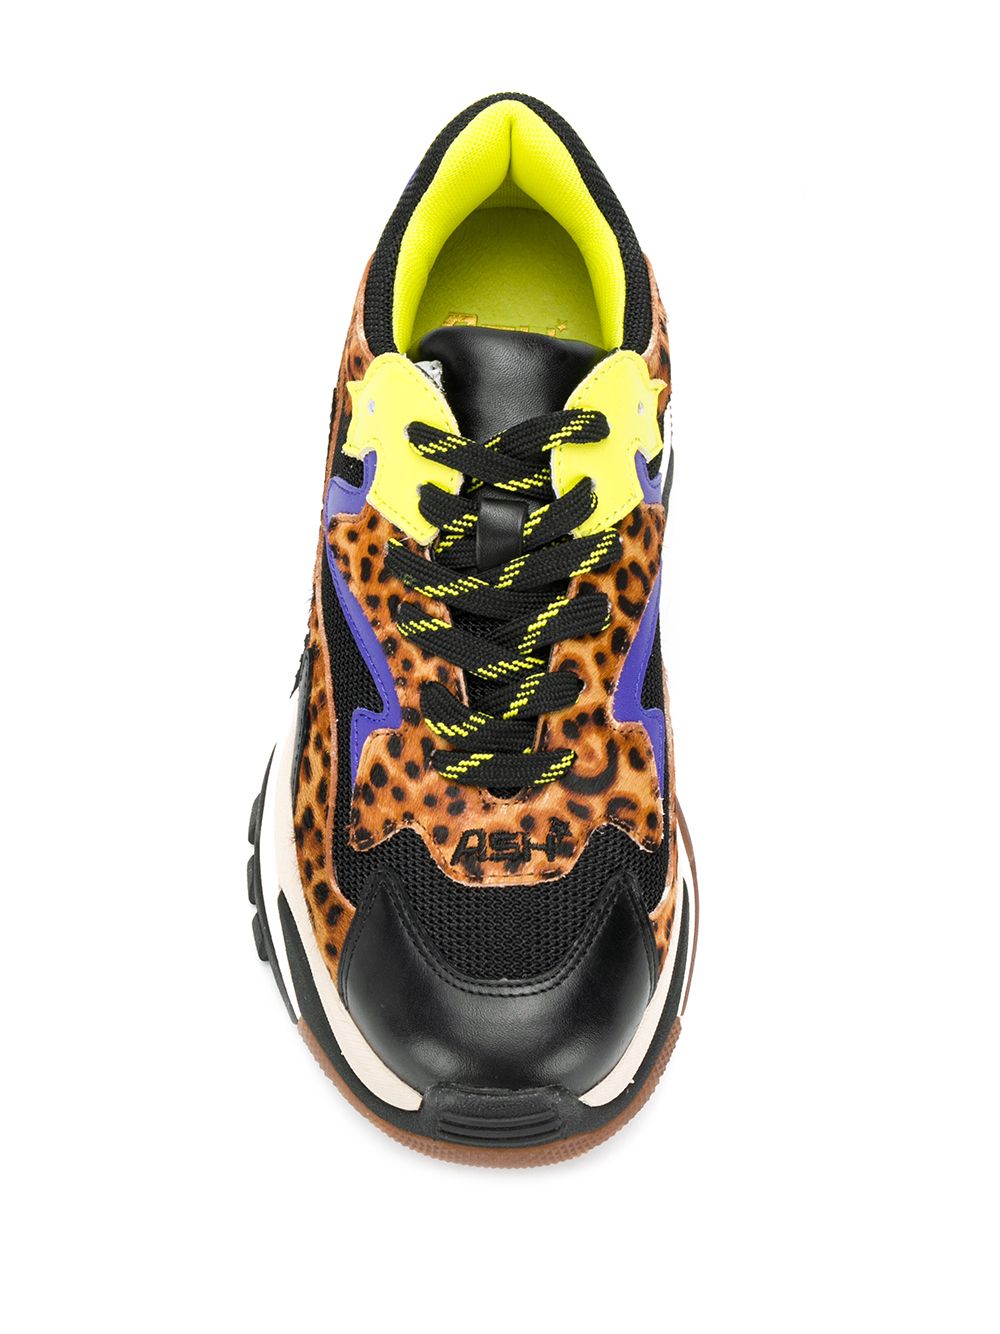 фото Ash массивные кроссовки с леопардовым принтом